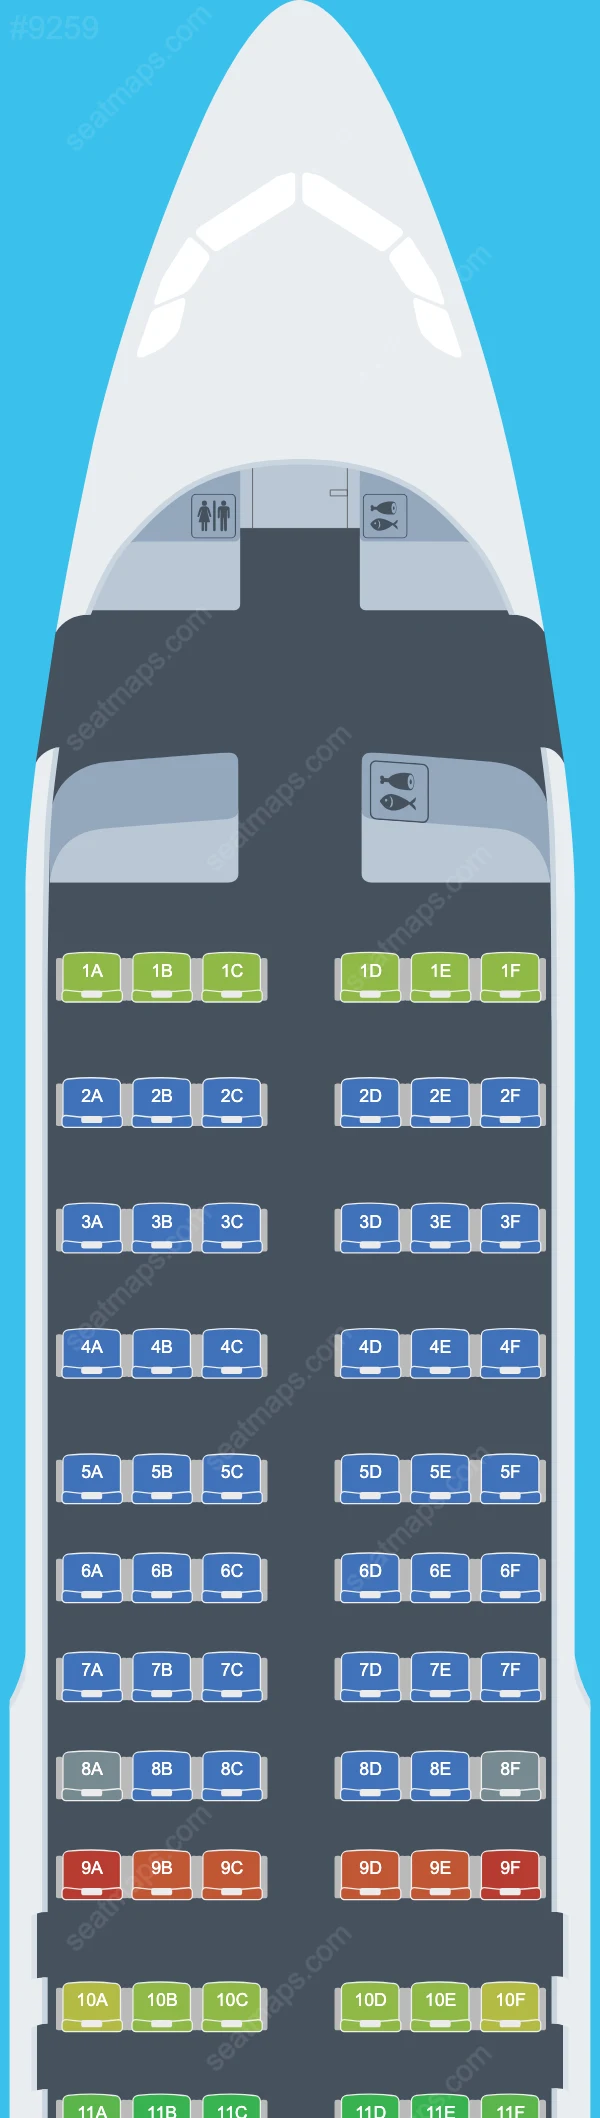 Air Albania Airbus A320 Seat Maps A320-200 V.2